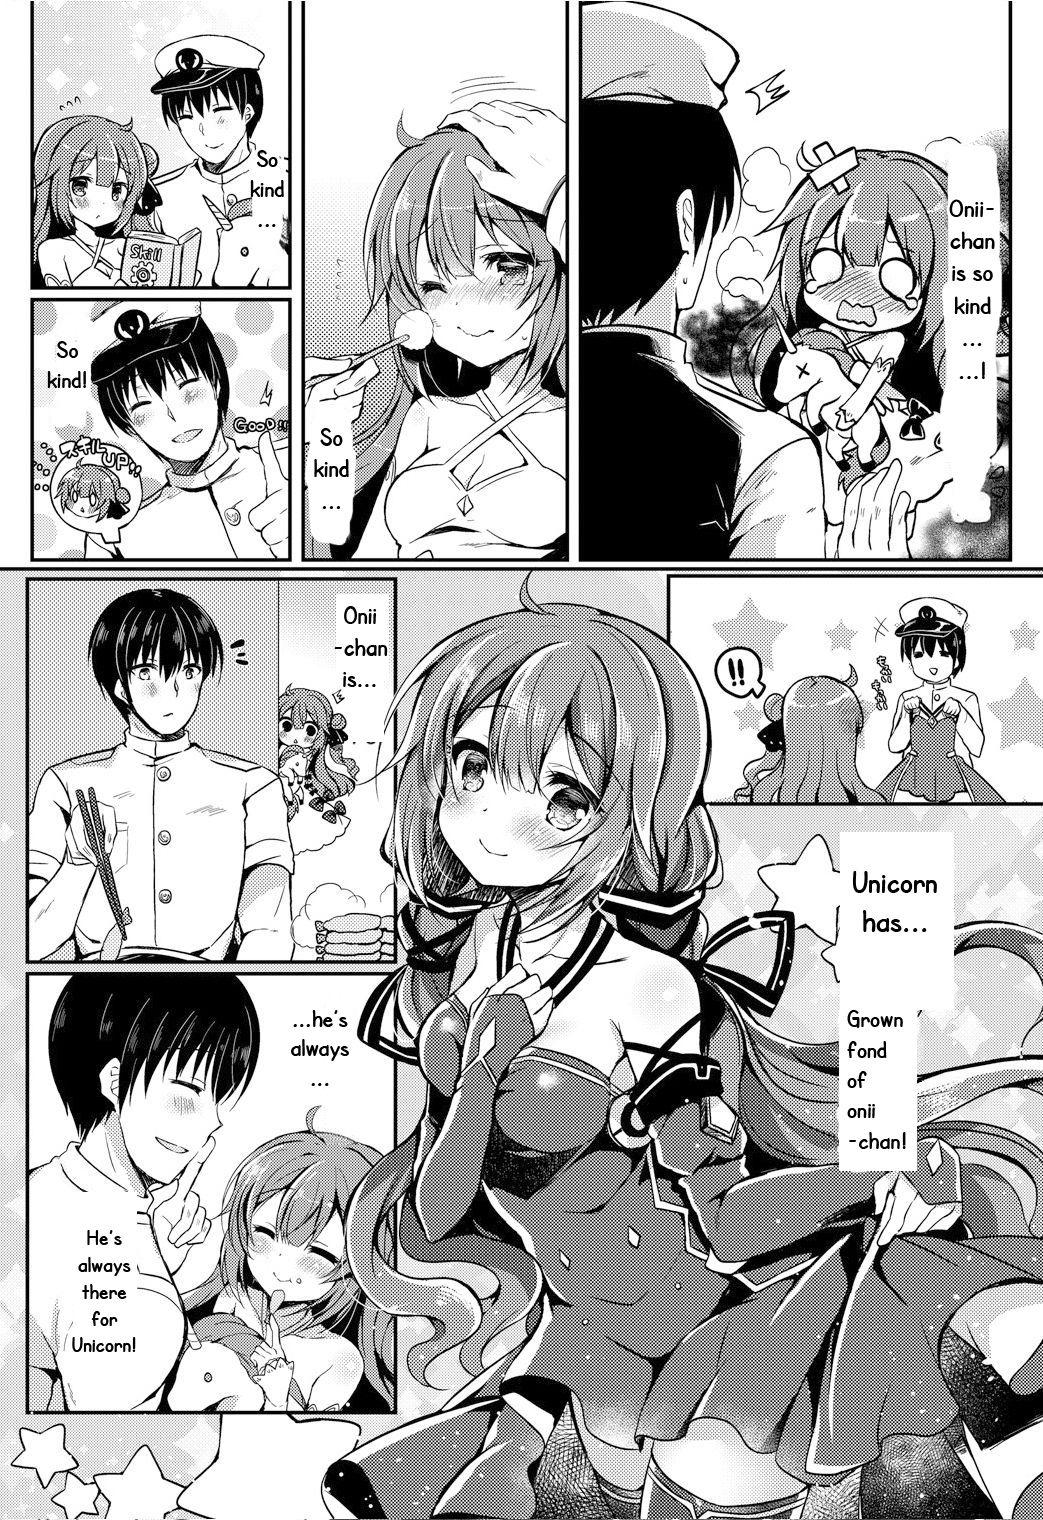  Yumemiru Kouma wa Nani o Miru? - Azur lane  - Page 3